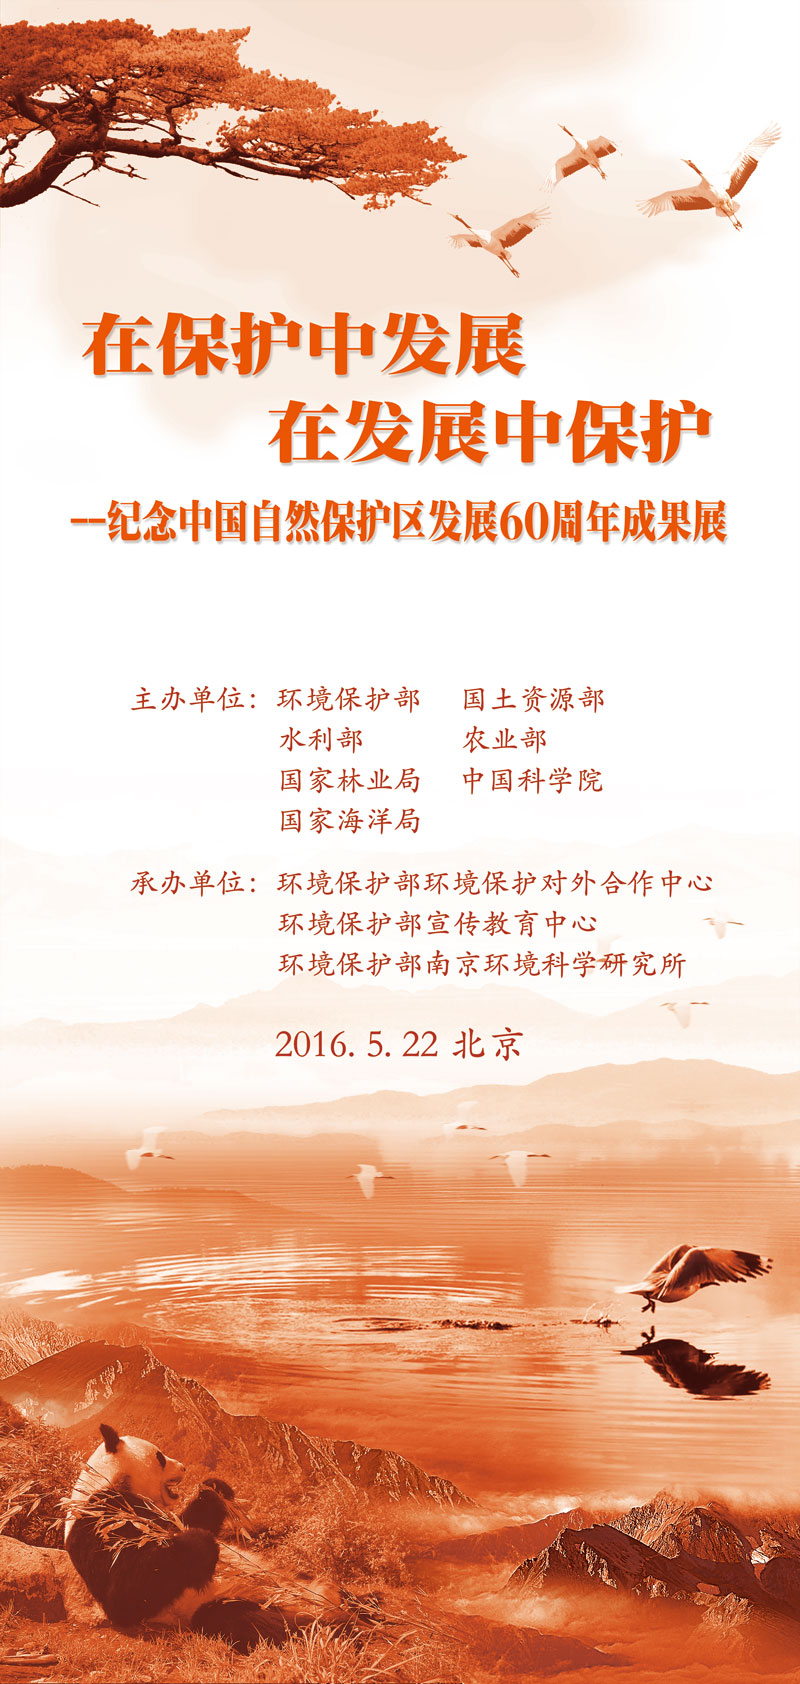 1-环保展板二稿中文竖版2mx0.jpg